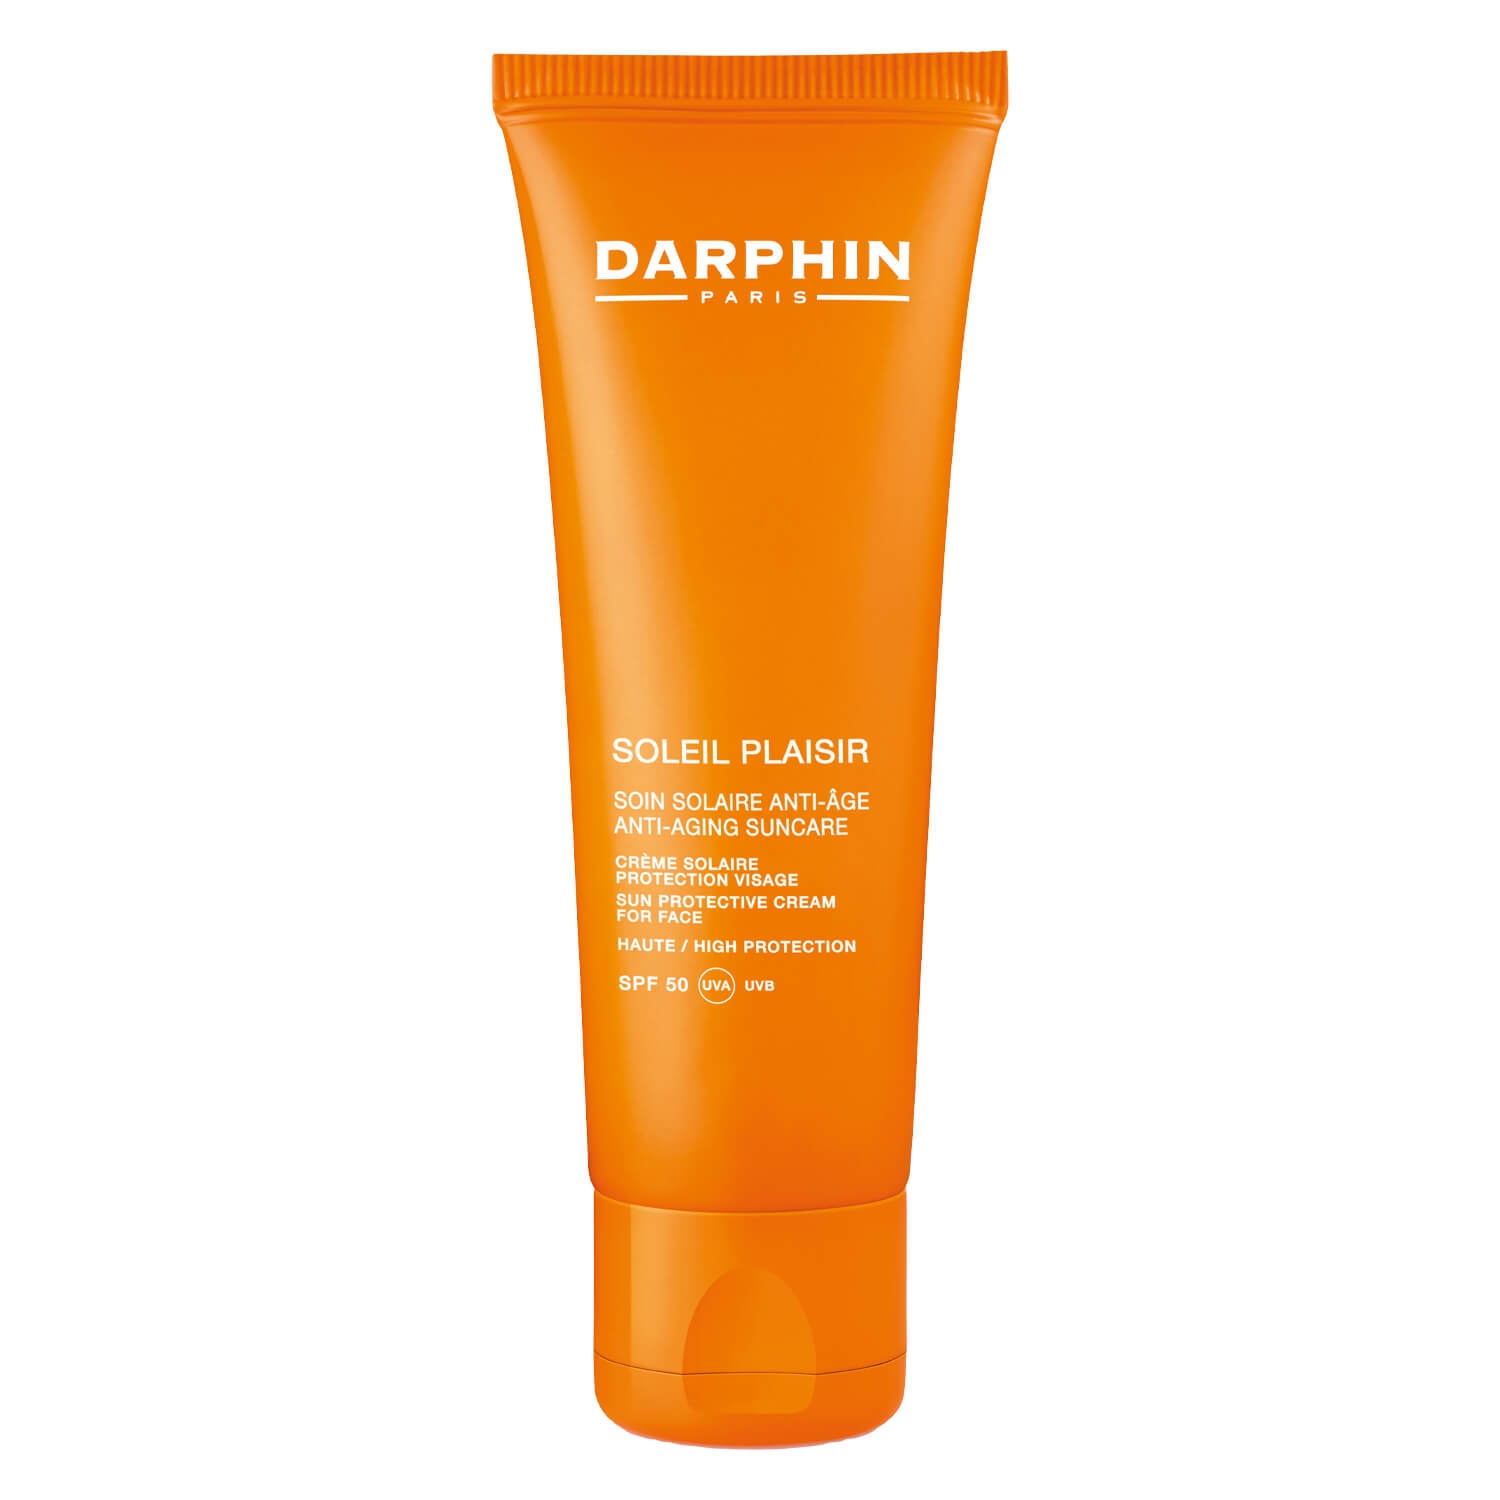 Produktbild von DARPHIN CARE - Soleil Plaisir Sun Protective Cream SPF50